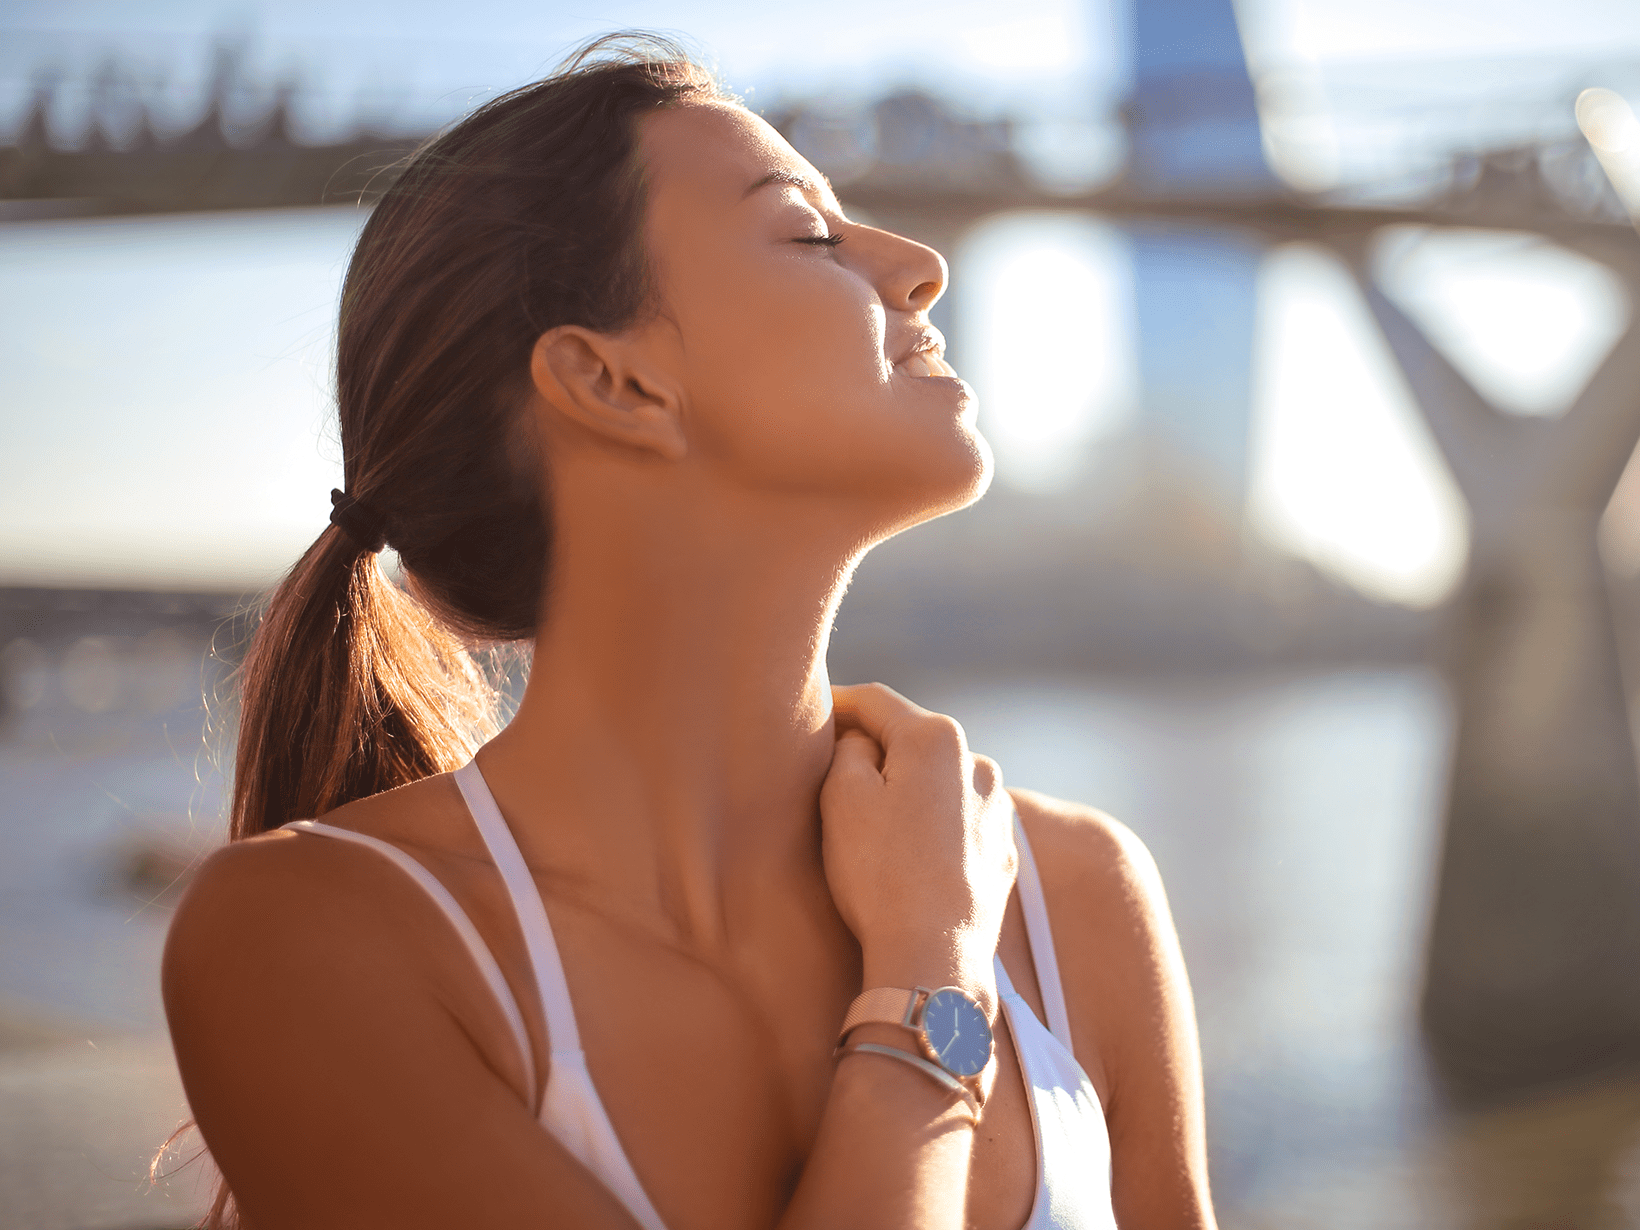 Benefici del sole: perché fa bene alla salute e all'umore –NIVEA